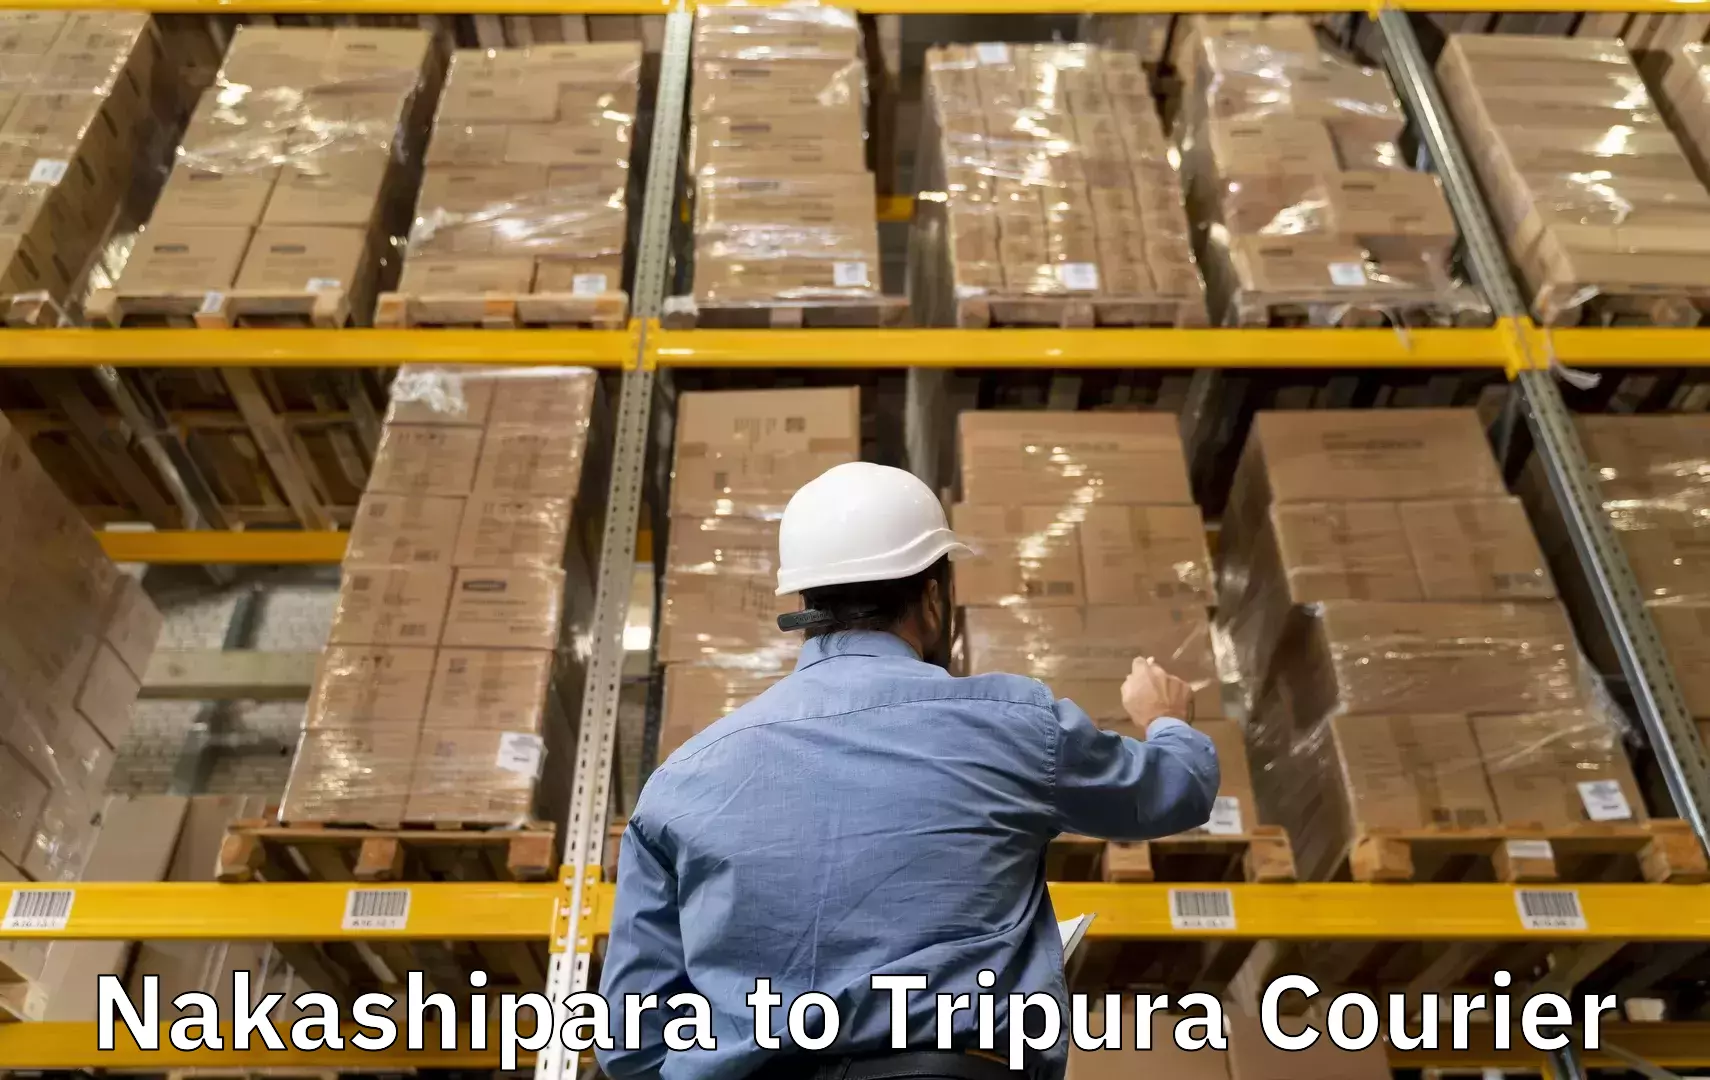 Excess baggage transport Nakashipara to Tripura